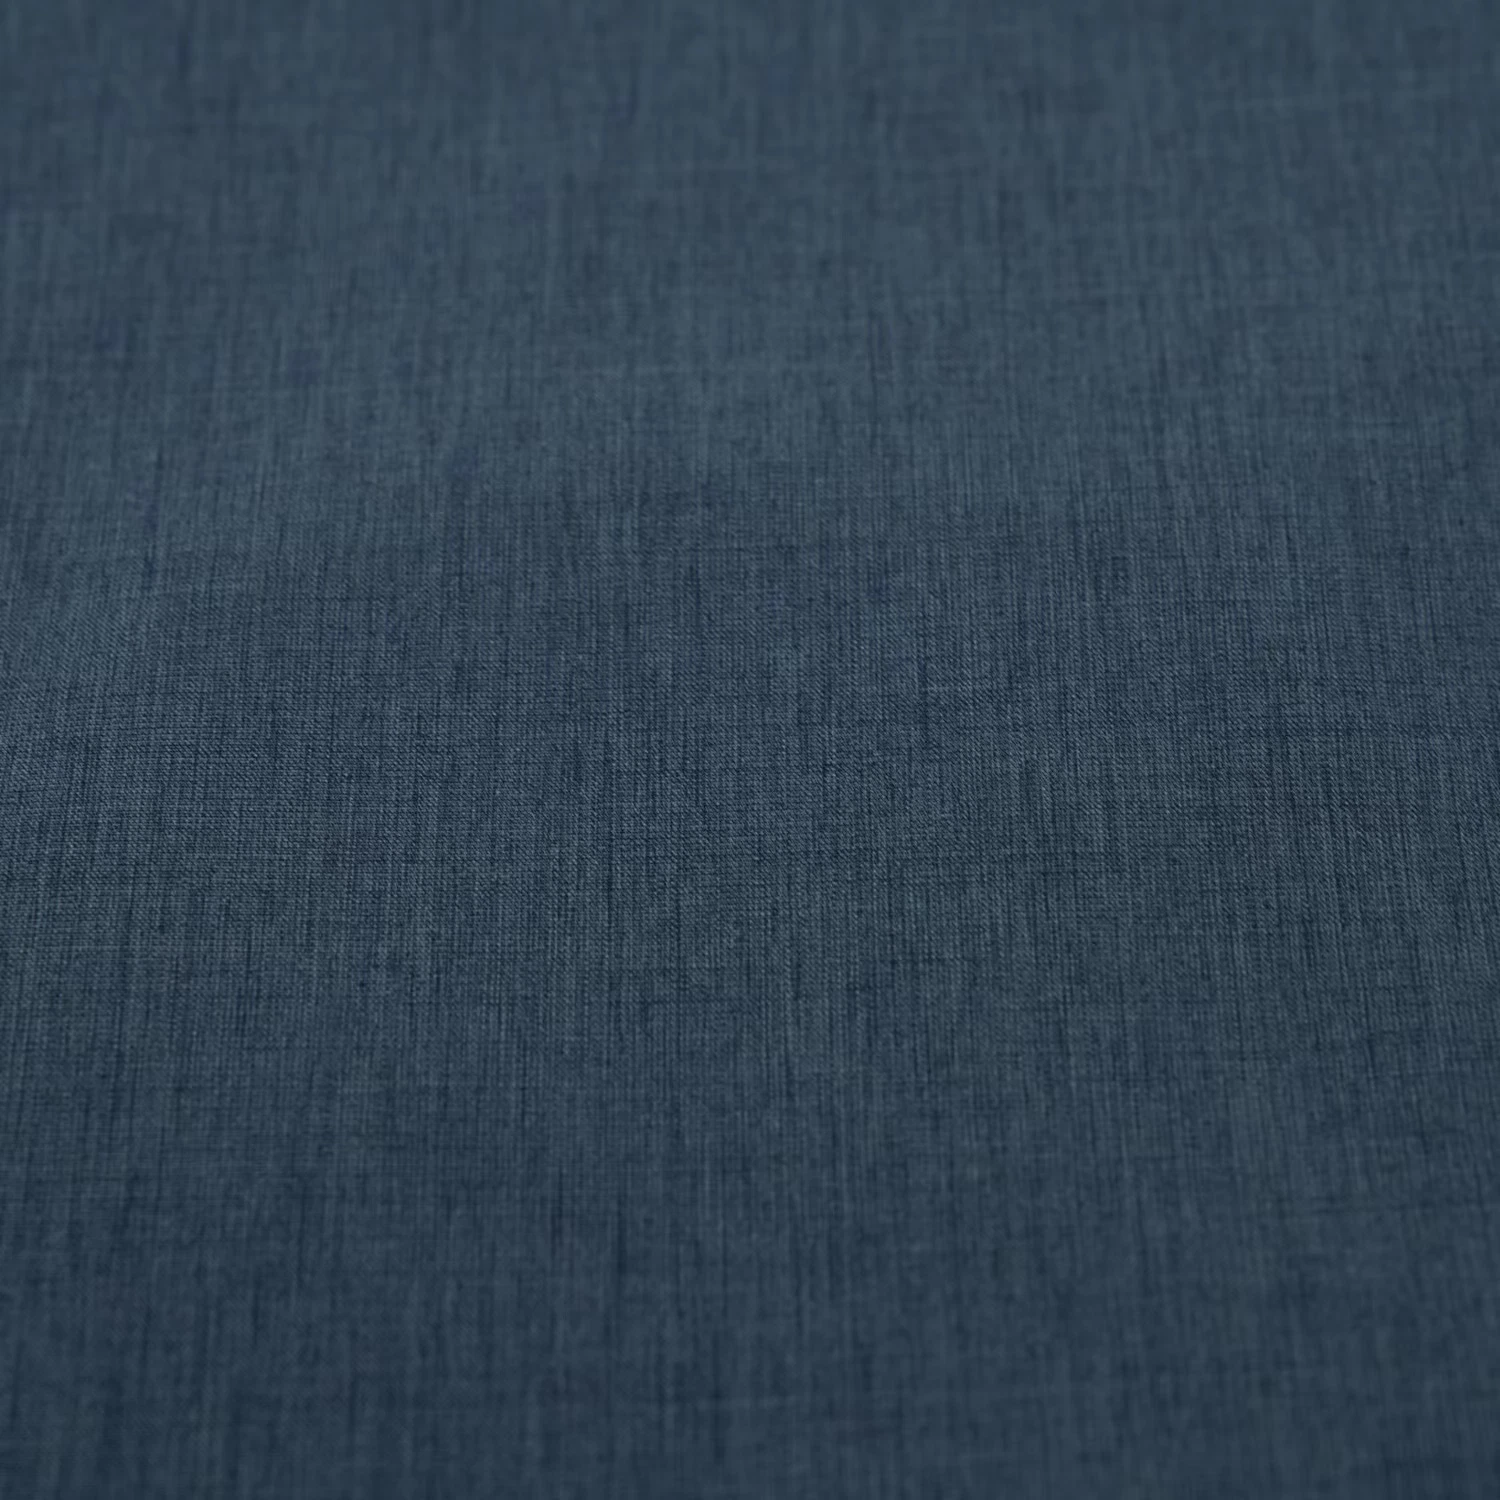 Nylon Polyester Two Ways Stretch Stripe Fabric 65%Nylon 25%Polyester 10% Spandex